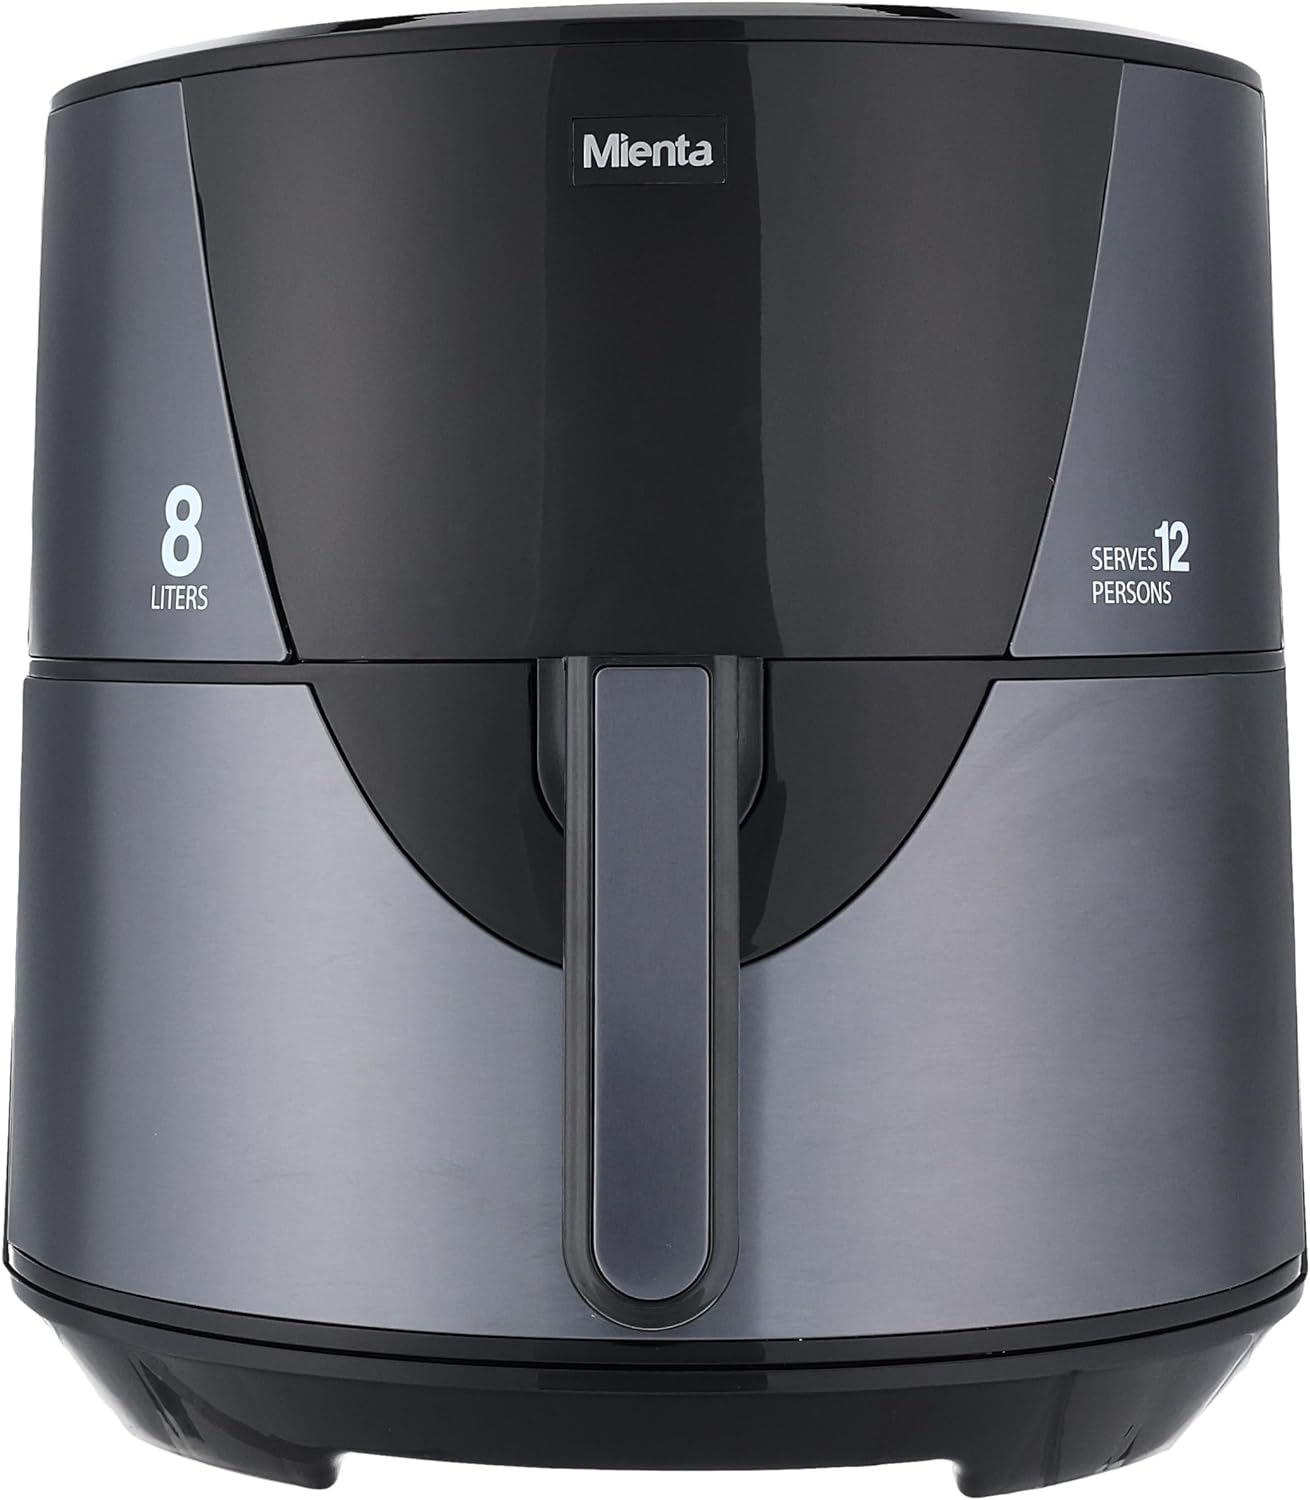 Mienta Digital Air Fryer, 8 Liters, 1700 Watt, Black - AF47634A